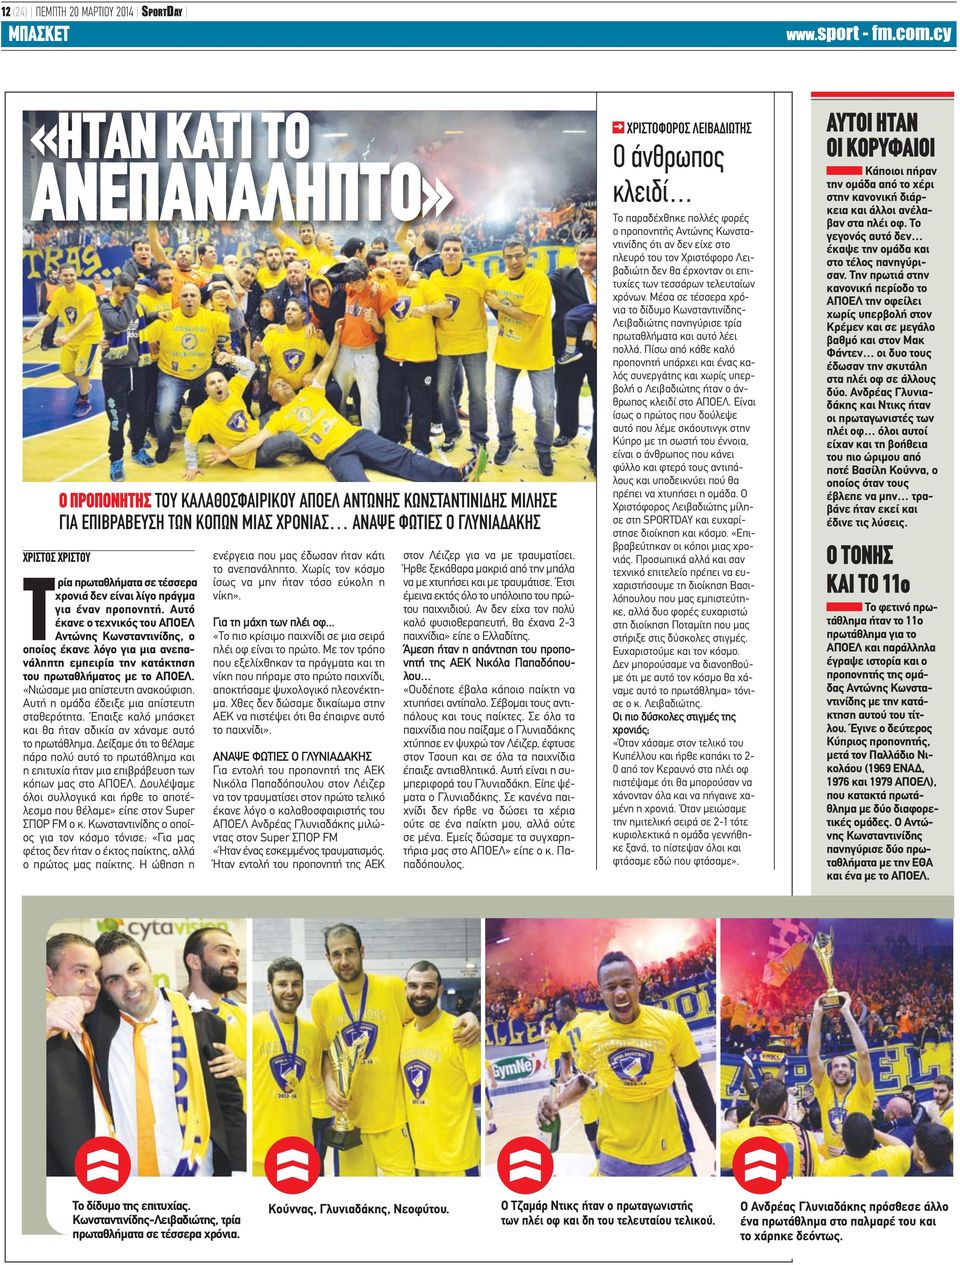 Αυτό έκανε ο τεχνικός του ΑΠΟΕΛ Αντώνης Κωνσταντινίδης, ο οποίος έκανε λόγο για μια ανεπανάληπτη εμπειρία την κατάκτηση του πρωταθλήματος με το ΑΠΟΕΛ. «Νιώσαμε μια απίστευτη ανακούφιση.